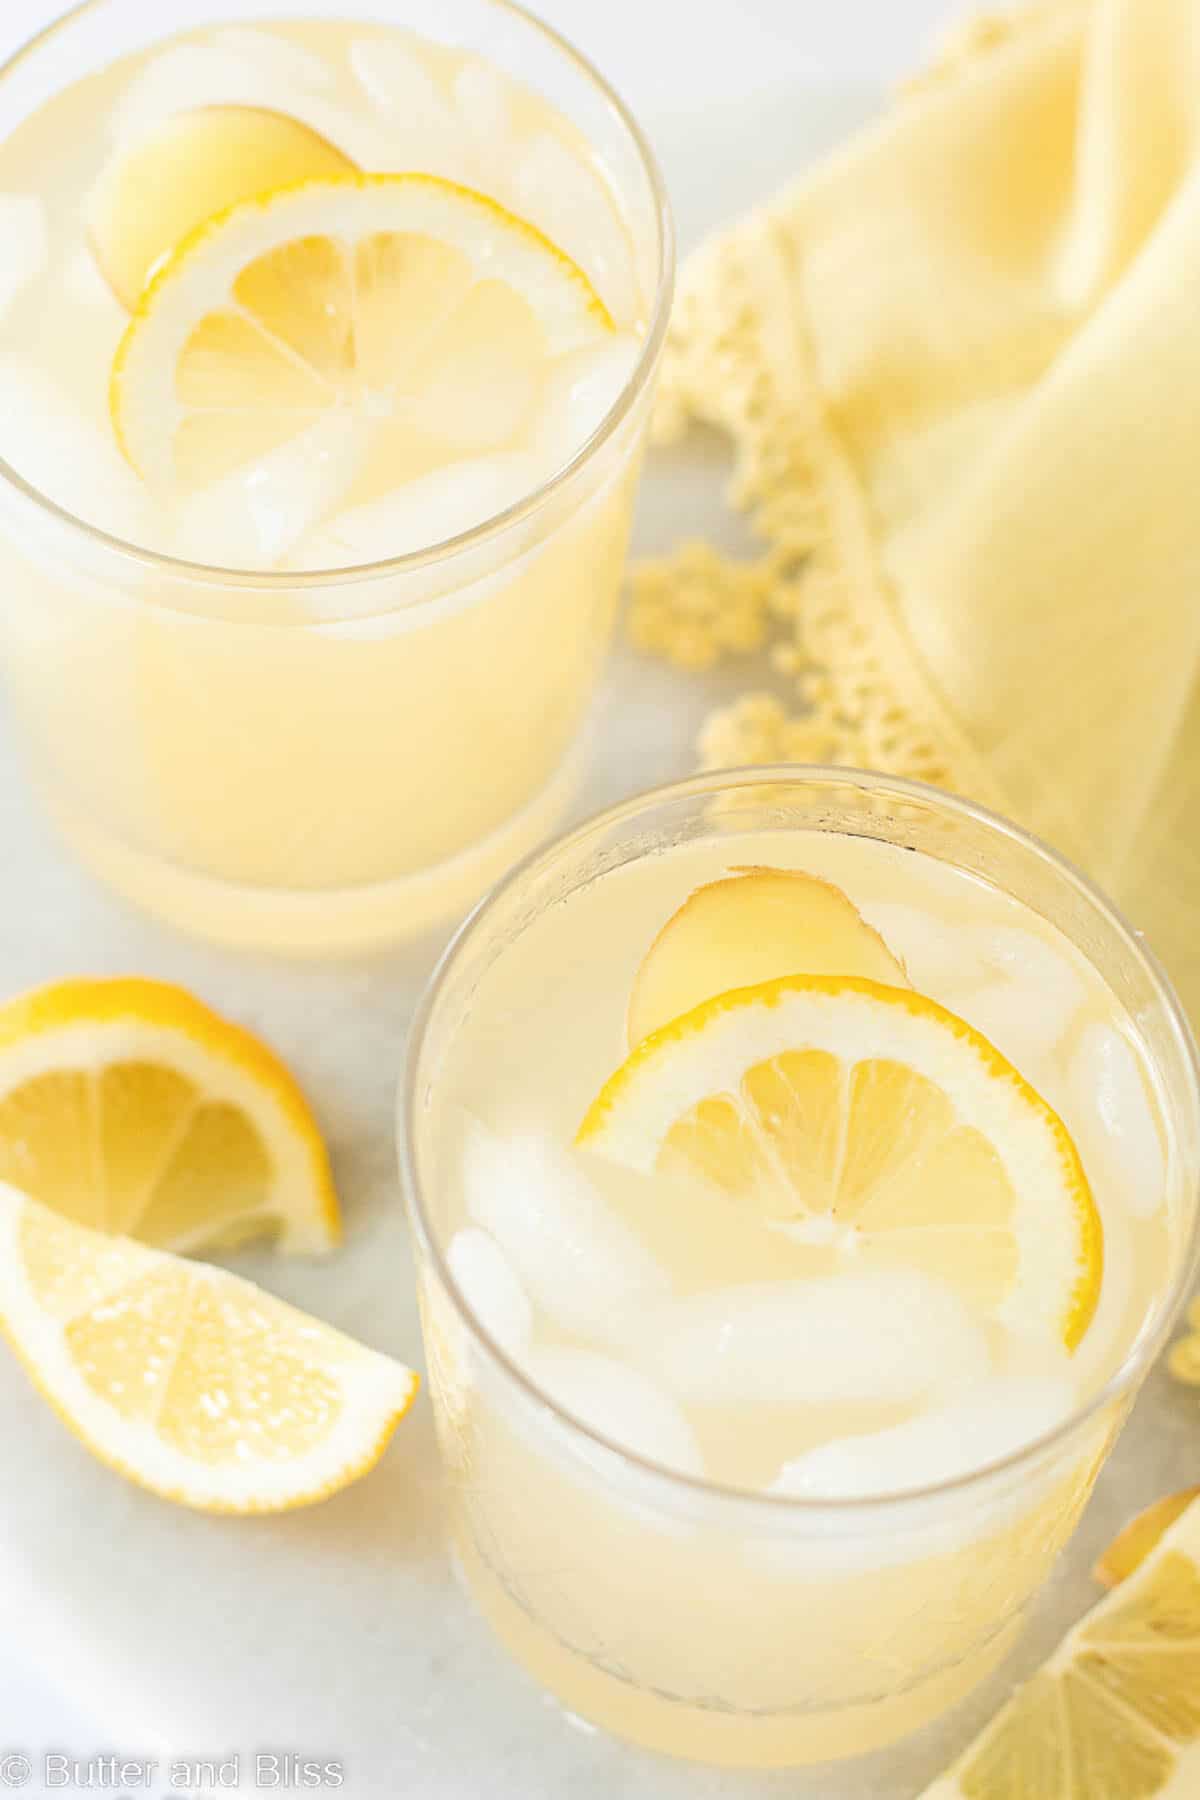 Inside photo of two glasses of ginger lemonade on ice